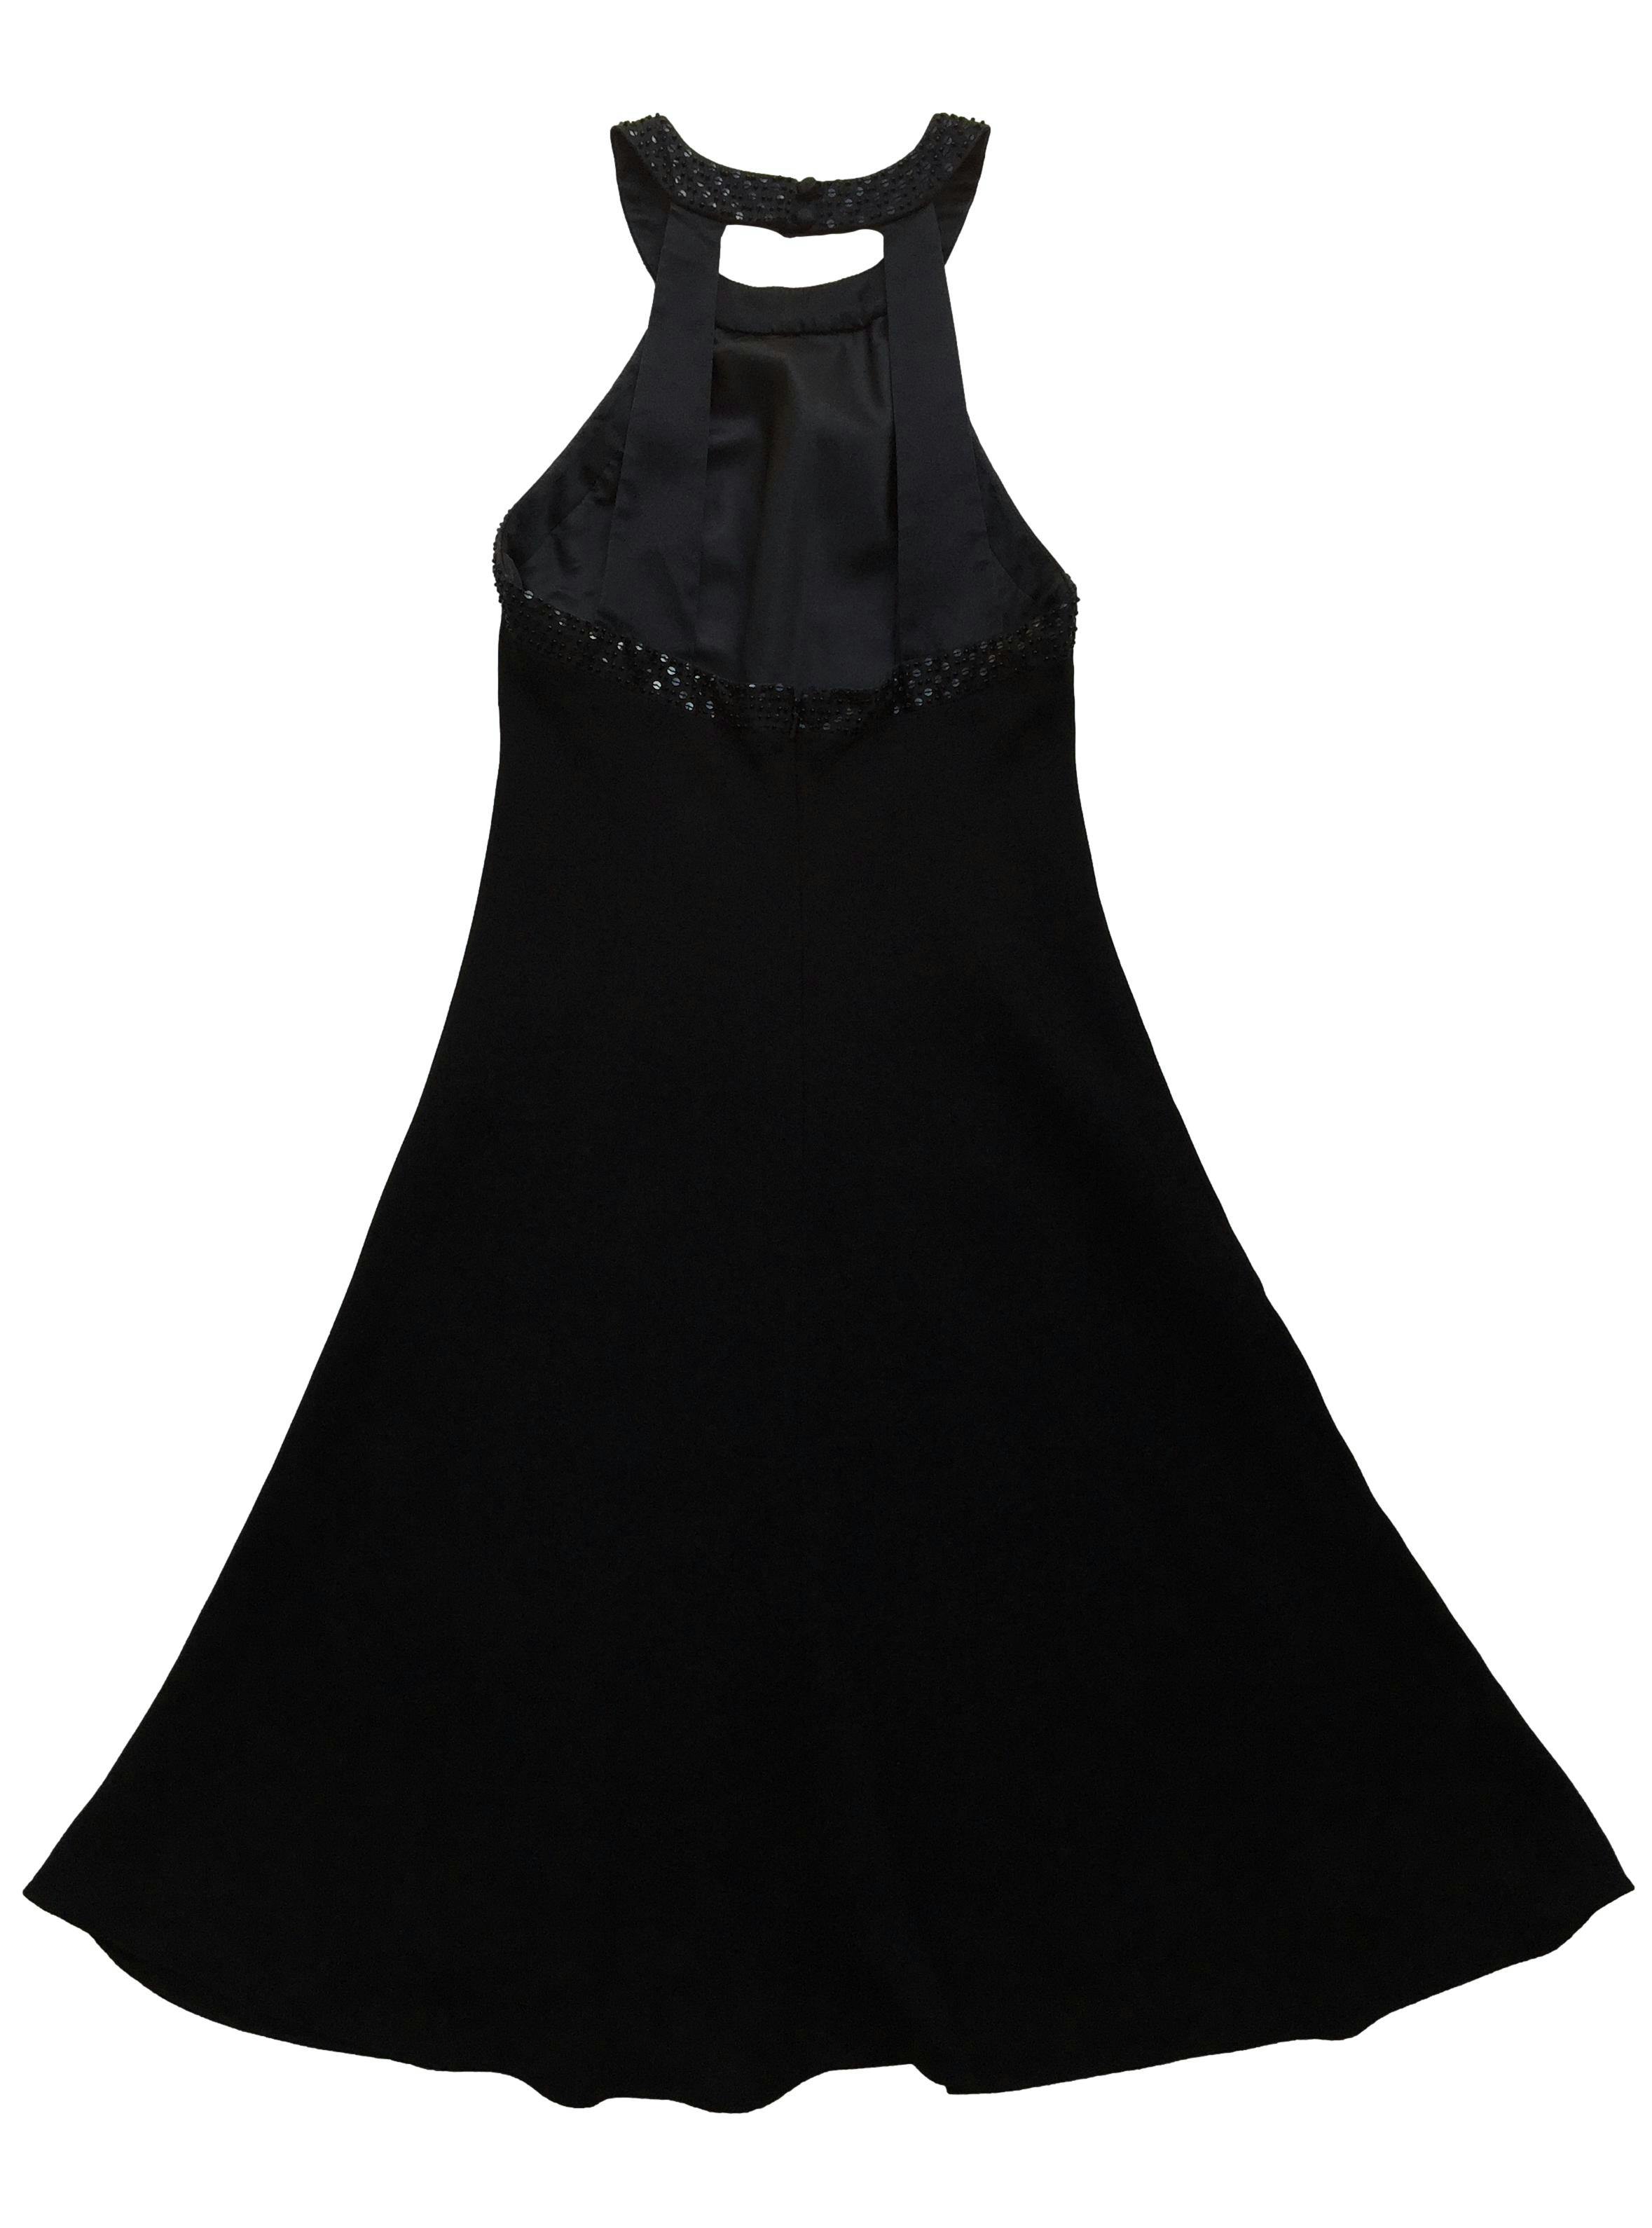 Vestido negro Jones New York, area de escote 100% seda con pedrería, forro, cierre y botones posteriores. Busto 90cm, Largo 110cm.